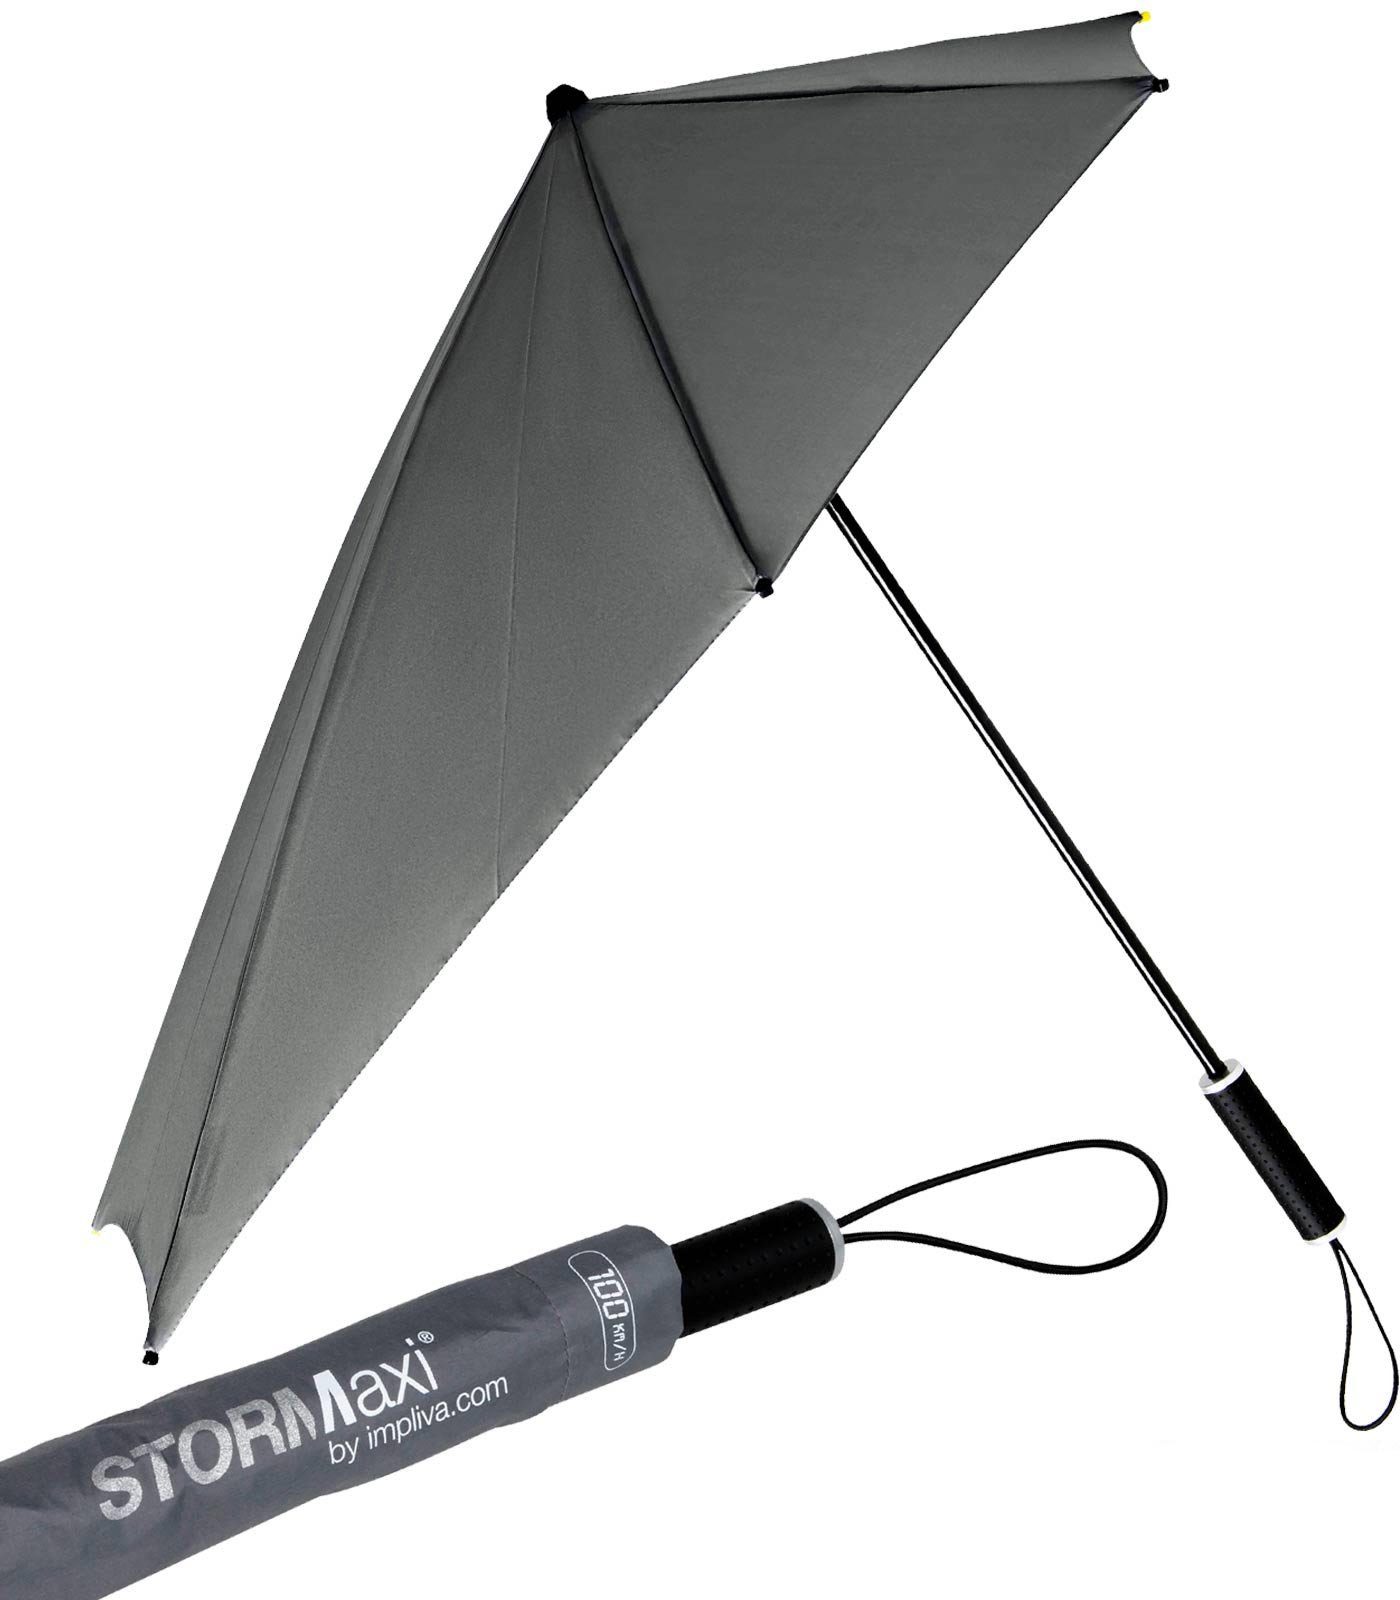 Impliva Stockregenschirm STORMaxi Sturmschirm aerodynamischer Regenschirm, durch seine besondere Form dreht sich der Schirm in den Wind, hält bis zu 100 km/h aus grau | Stockschirme